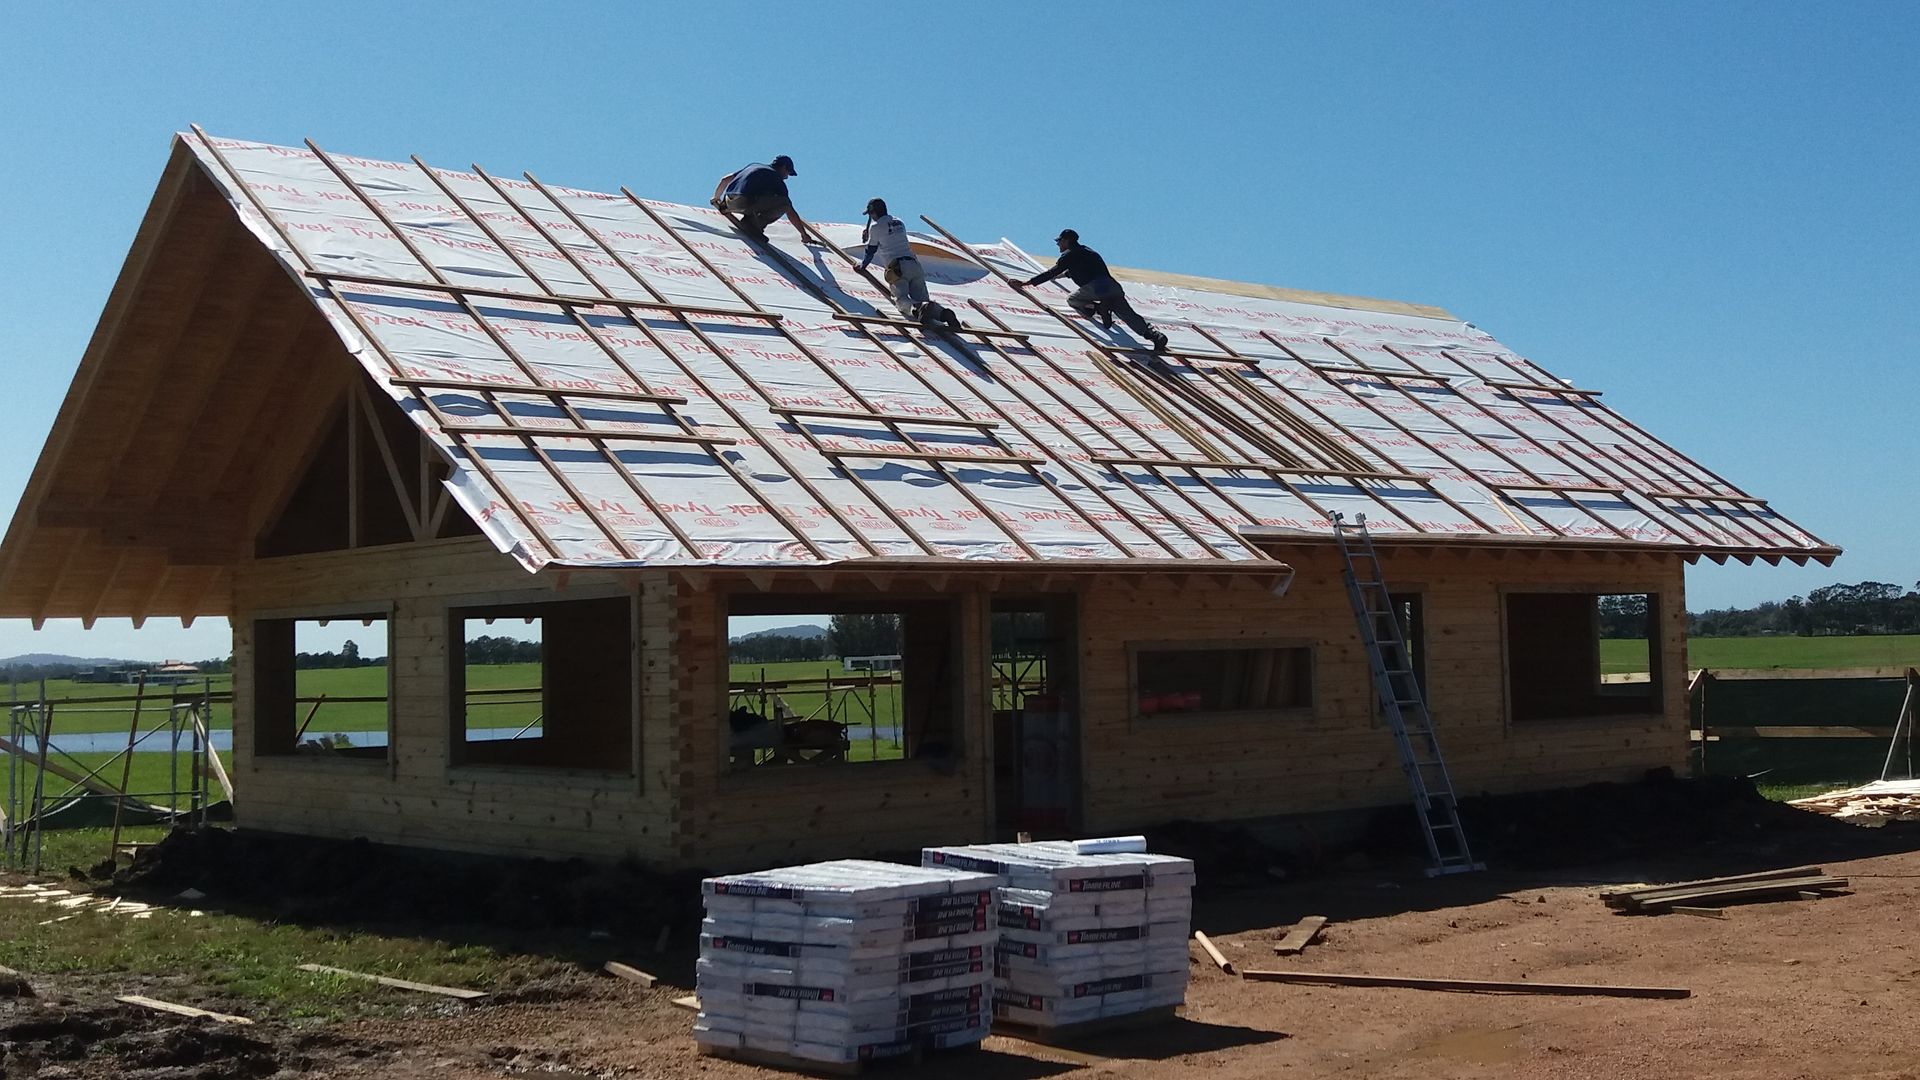 Casa en Uruguay (Construcción en 15 días) Superficie cubierta de 130 m2, Patagonia Log Homes - Arquitectos - Neuquén Patagonia Log Homes - Arquitectos - Neuquén Dom z drewna Drewno O efekcie drewna